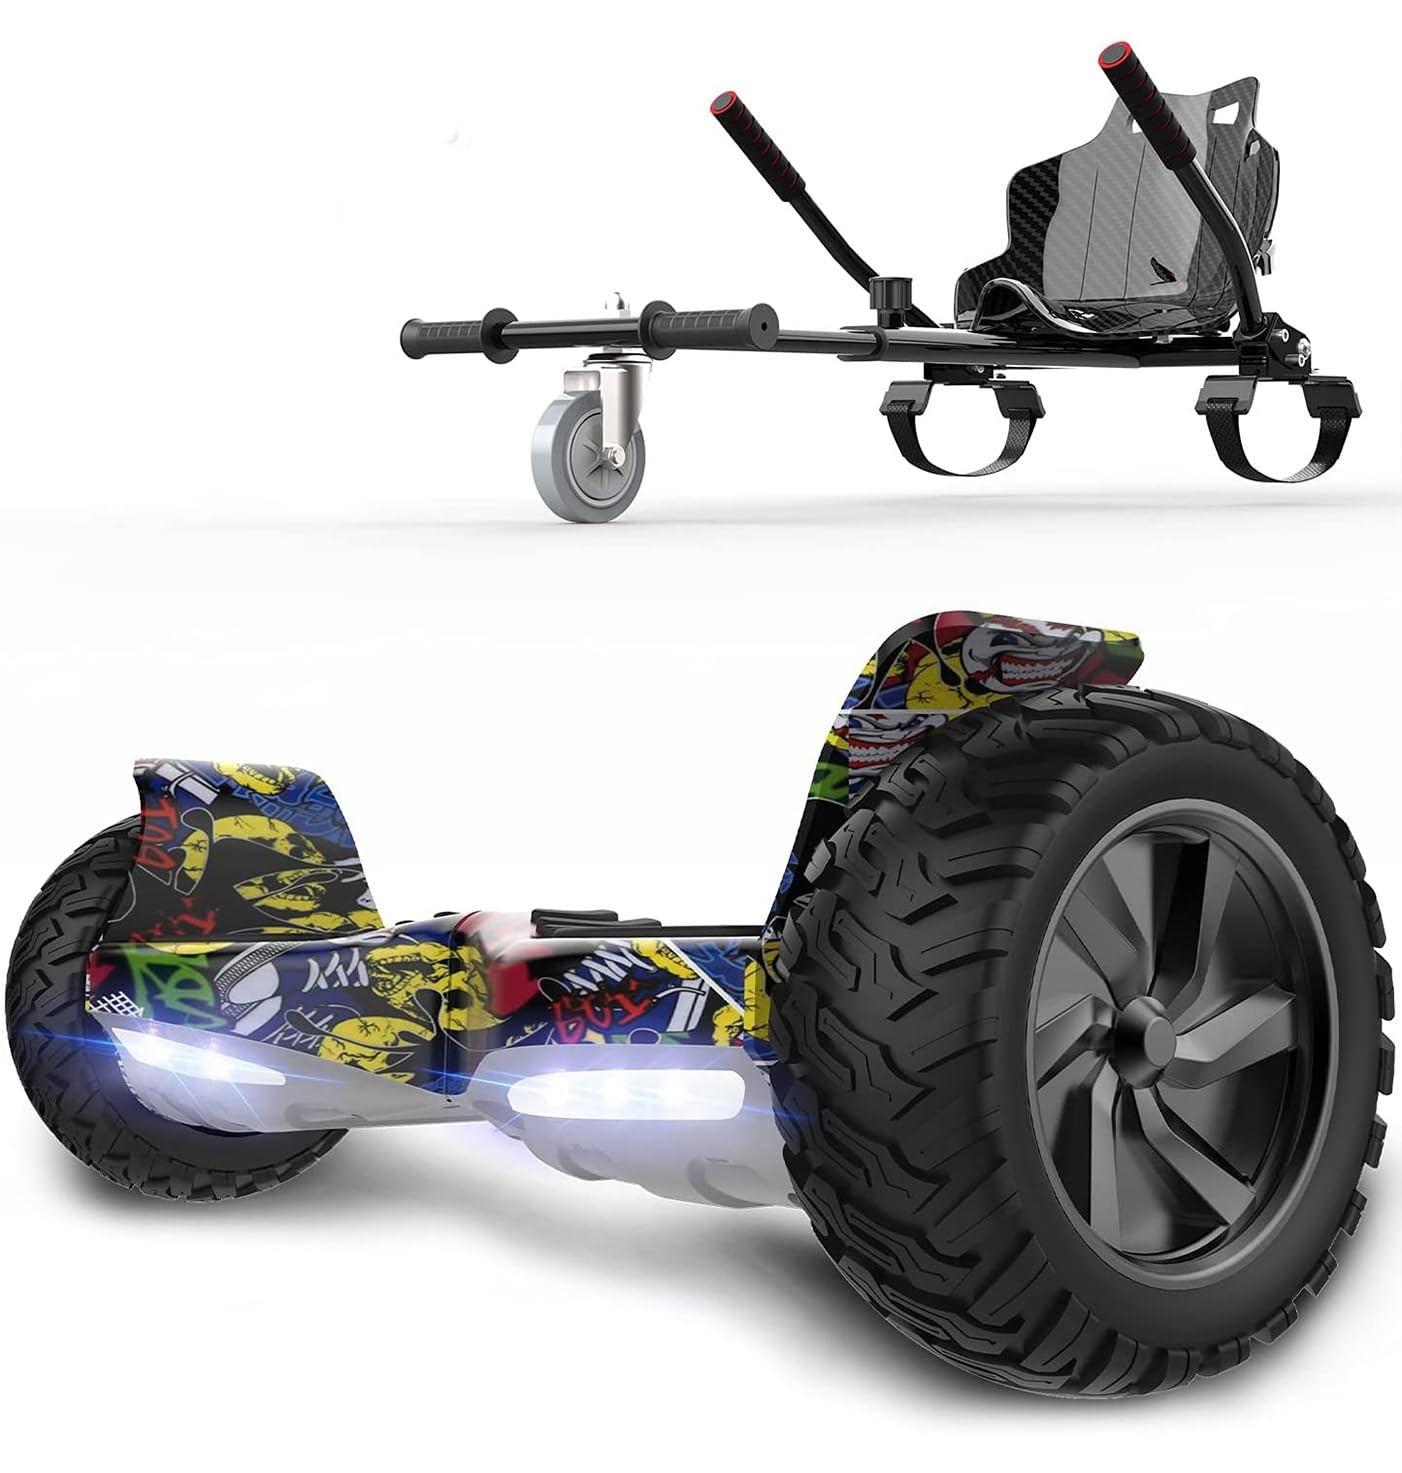 RCB Hoverboards SUV Selbstausgeglichener Hoverboards Off-Road, APP Steuerfunktion, 8,5 '' Hummer mit Bluetooth + Hoverkart Go Kart für Self Balancing hoverboards, Geschenk für Kinder